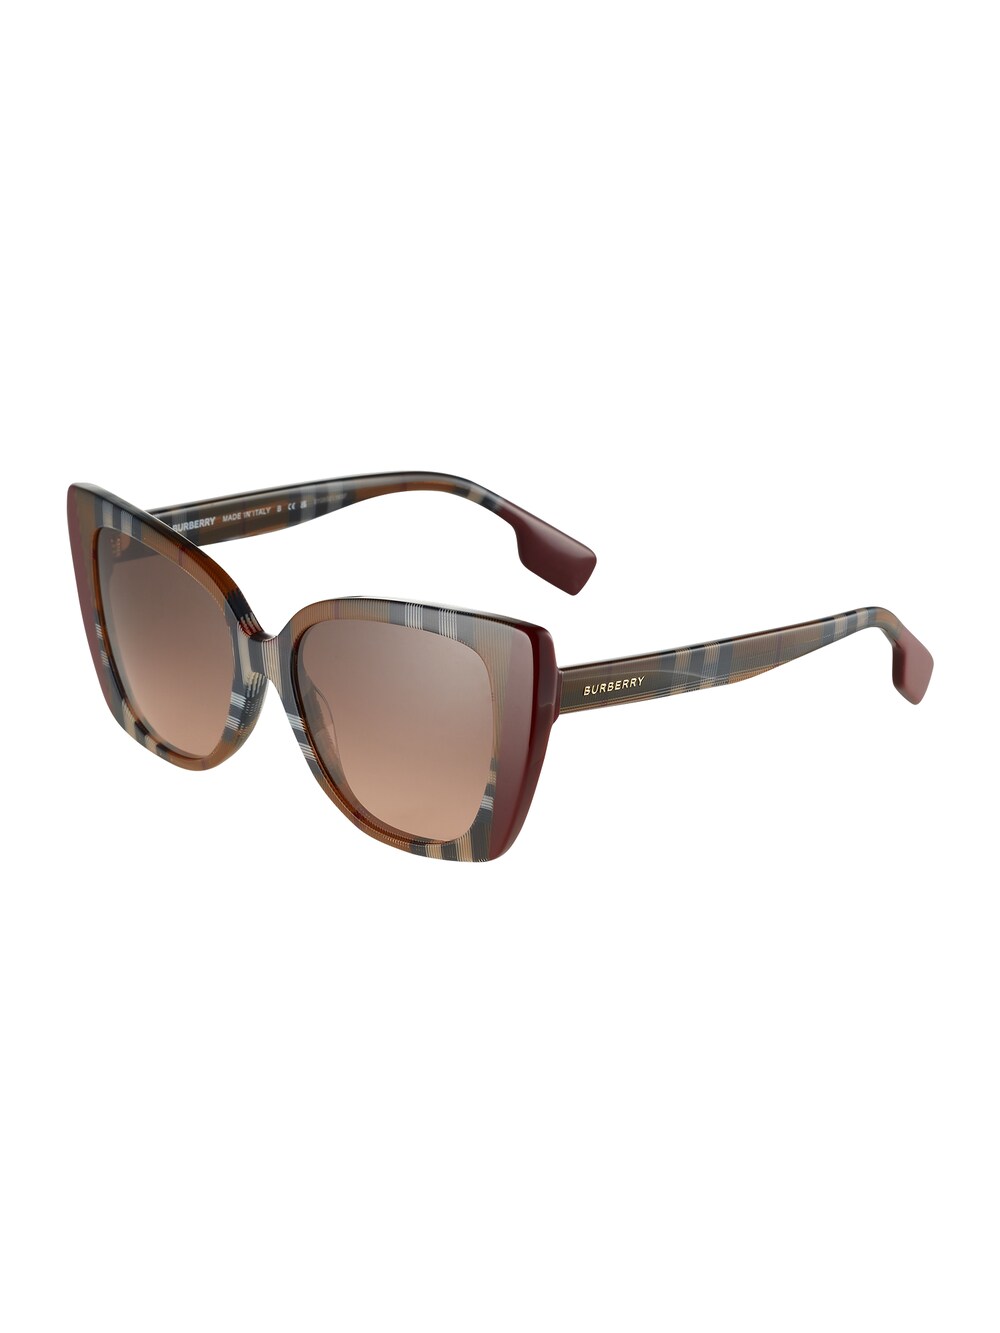 Солнечные очки BURBERRY 0BE4393 54 405413, каштановый/светло-коричневый